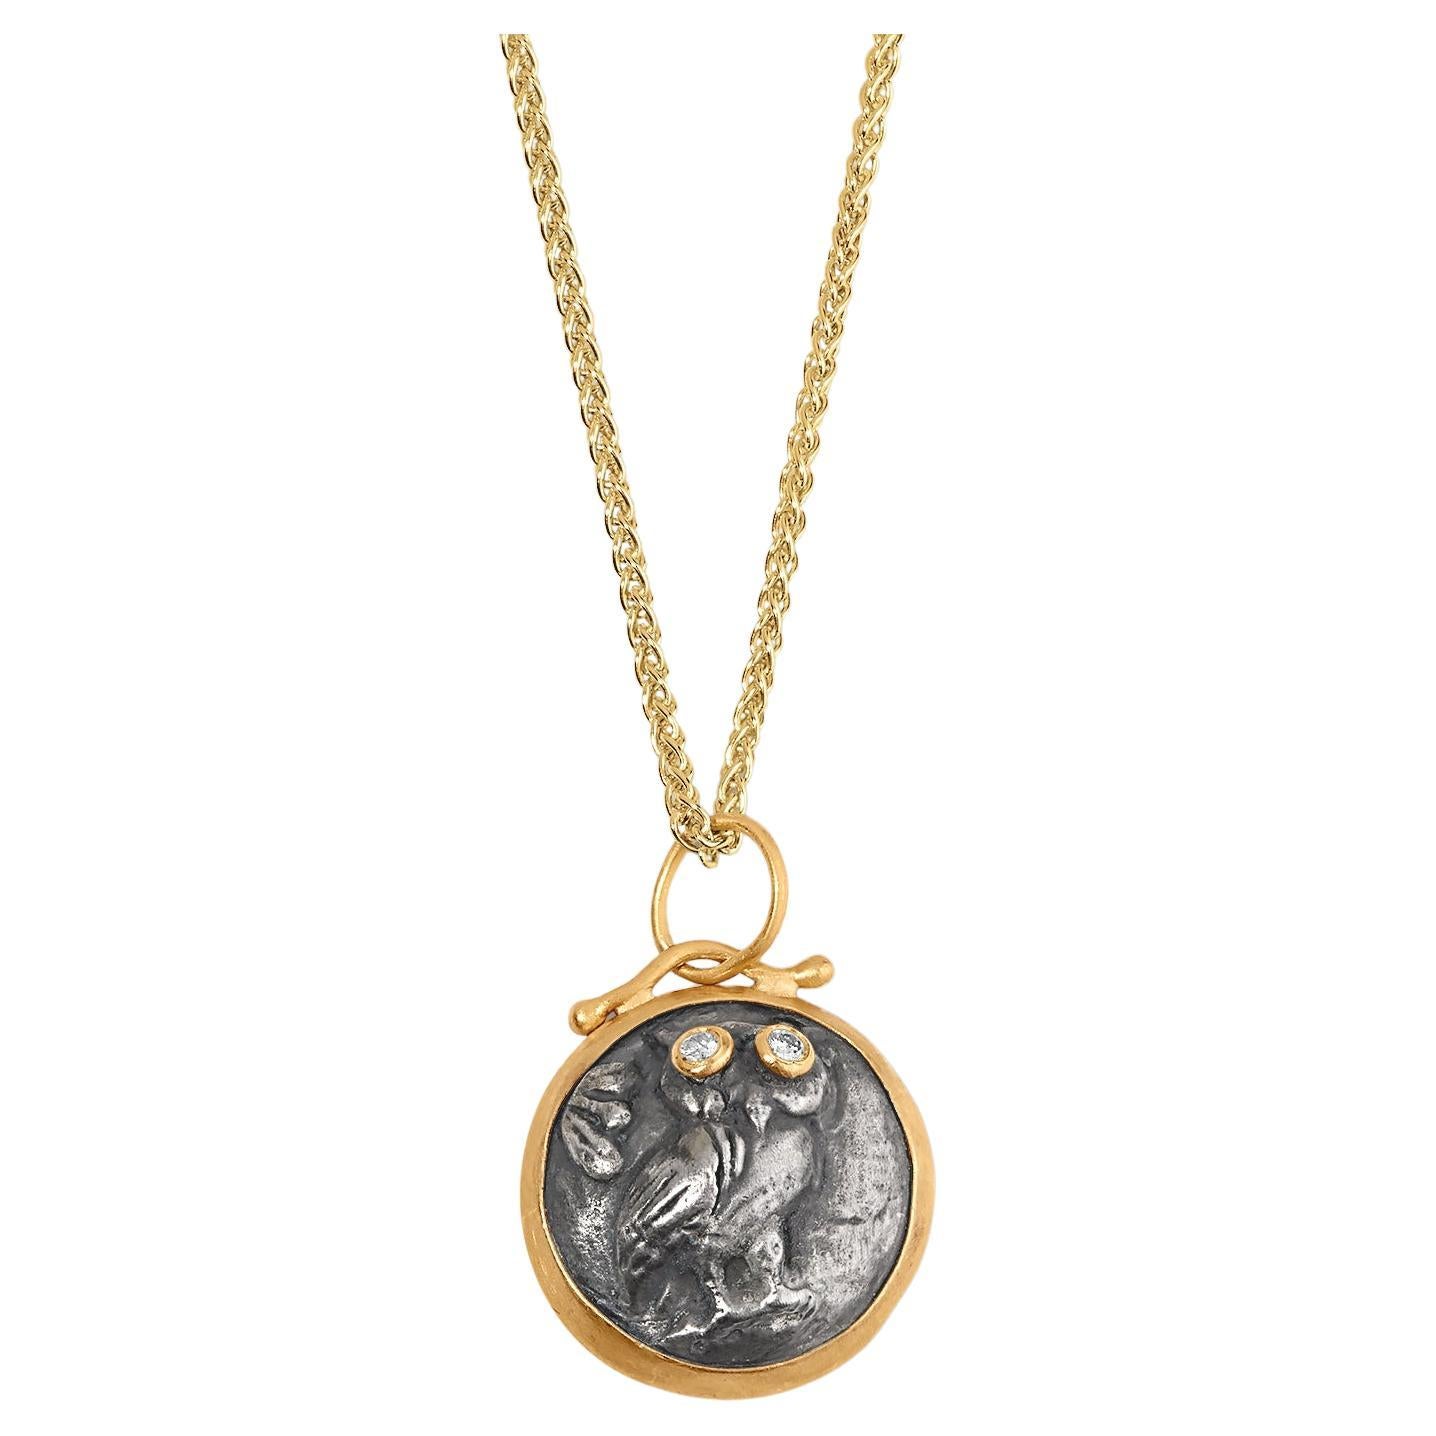 Athena''s Owl with Diamond Eyes, collier pendentif à breloque à pièces de monnaie en or 24 carats, SS